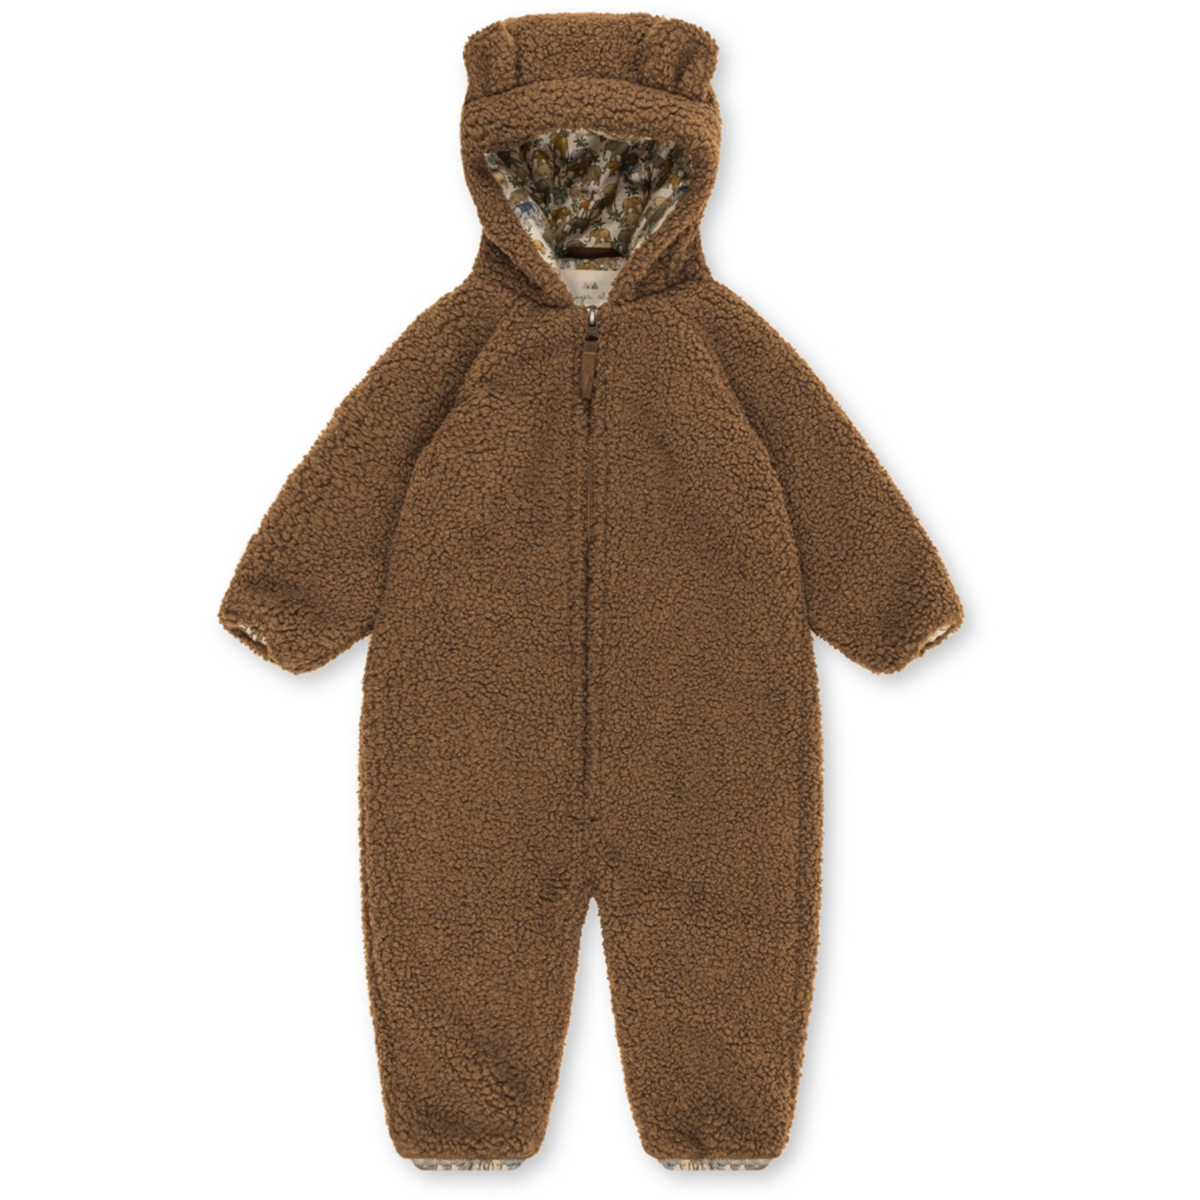 Jouw kindje is warm, zacht en comfortabel met deze superschattige onesie van Konges Slojd. De grizz teddy onesie in de kleur shitake heeft een warme teddy stof aan de buitenkant en een katoenen voering met leuke print. VanZus